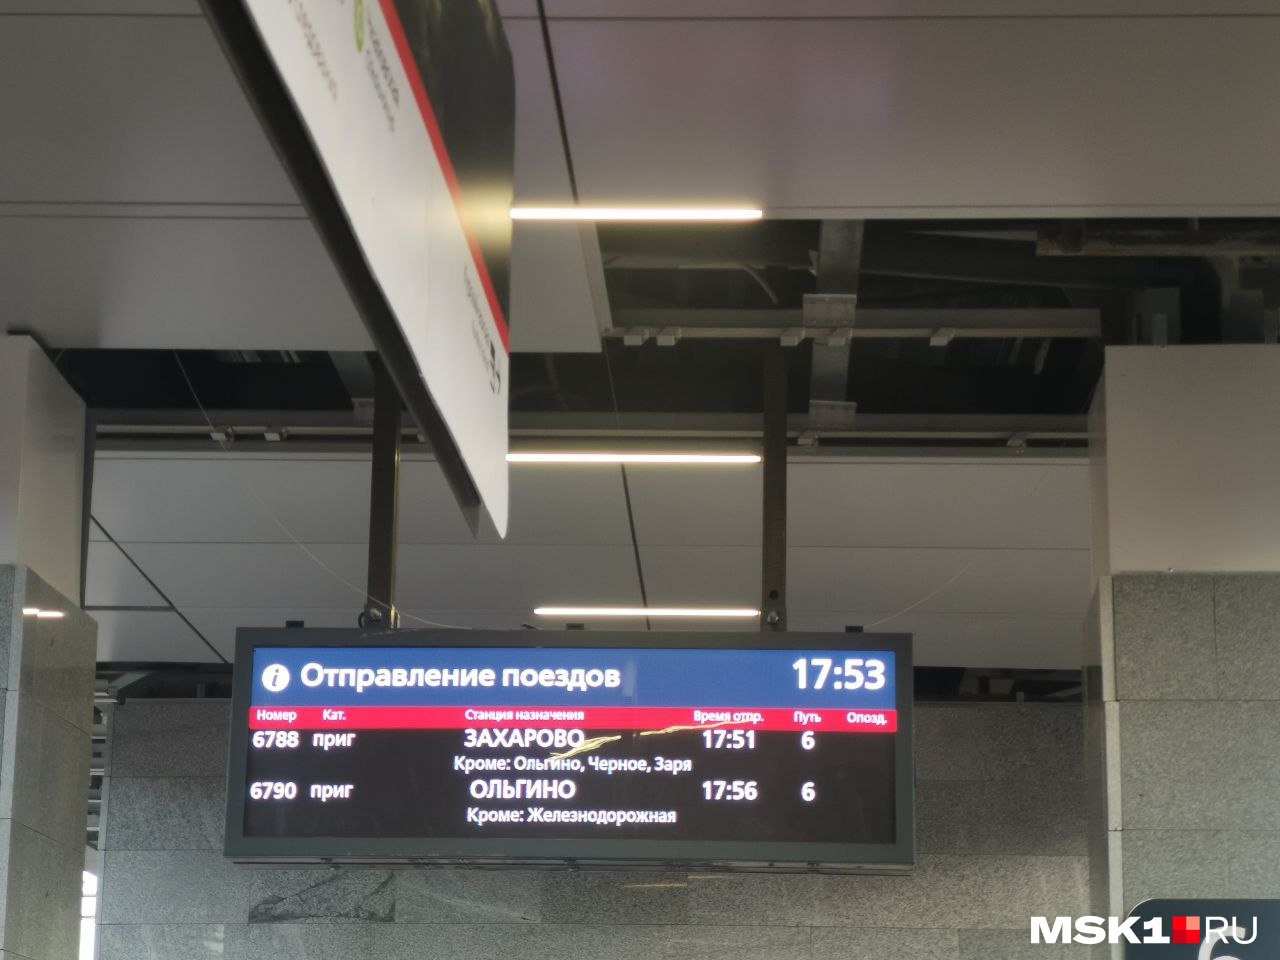 Расписание курского вокзала горьковское направление